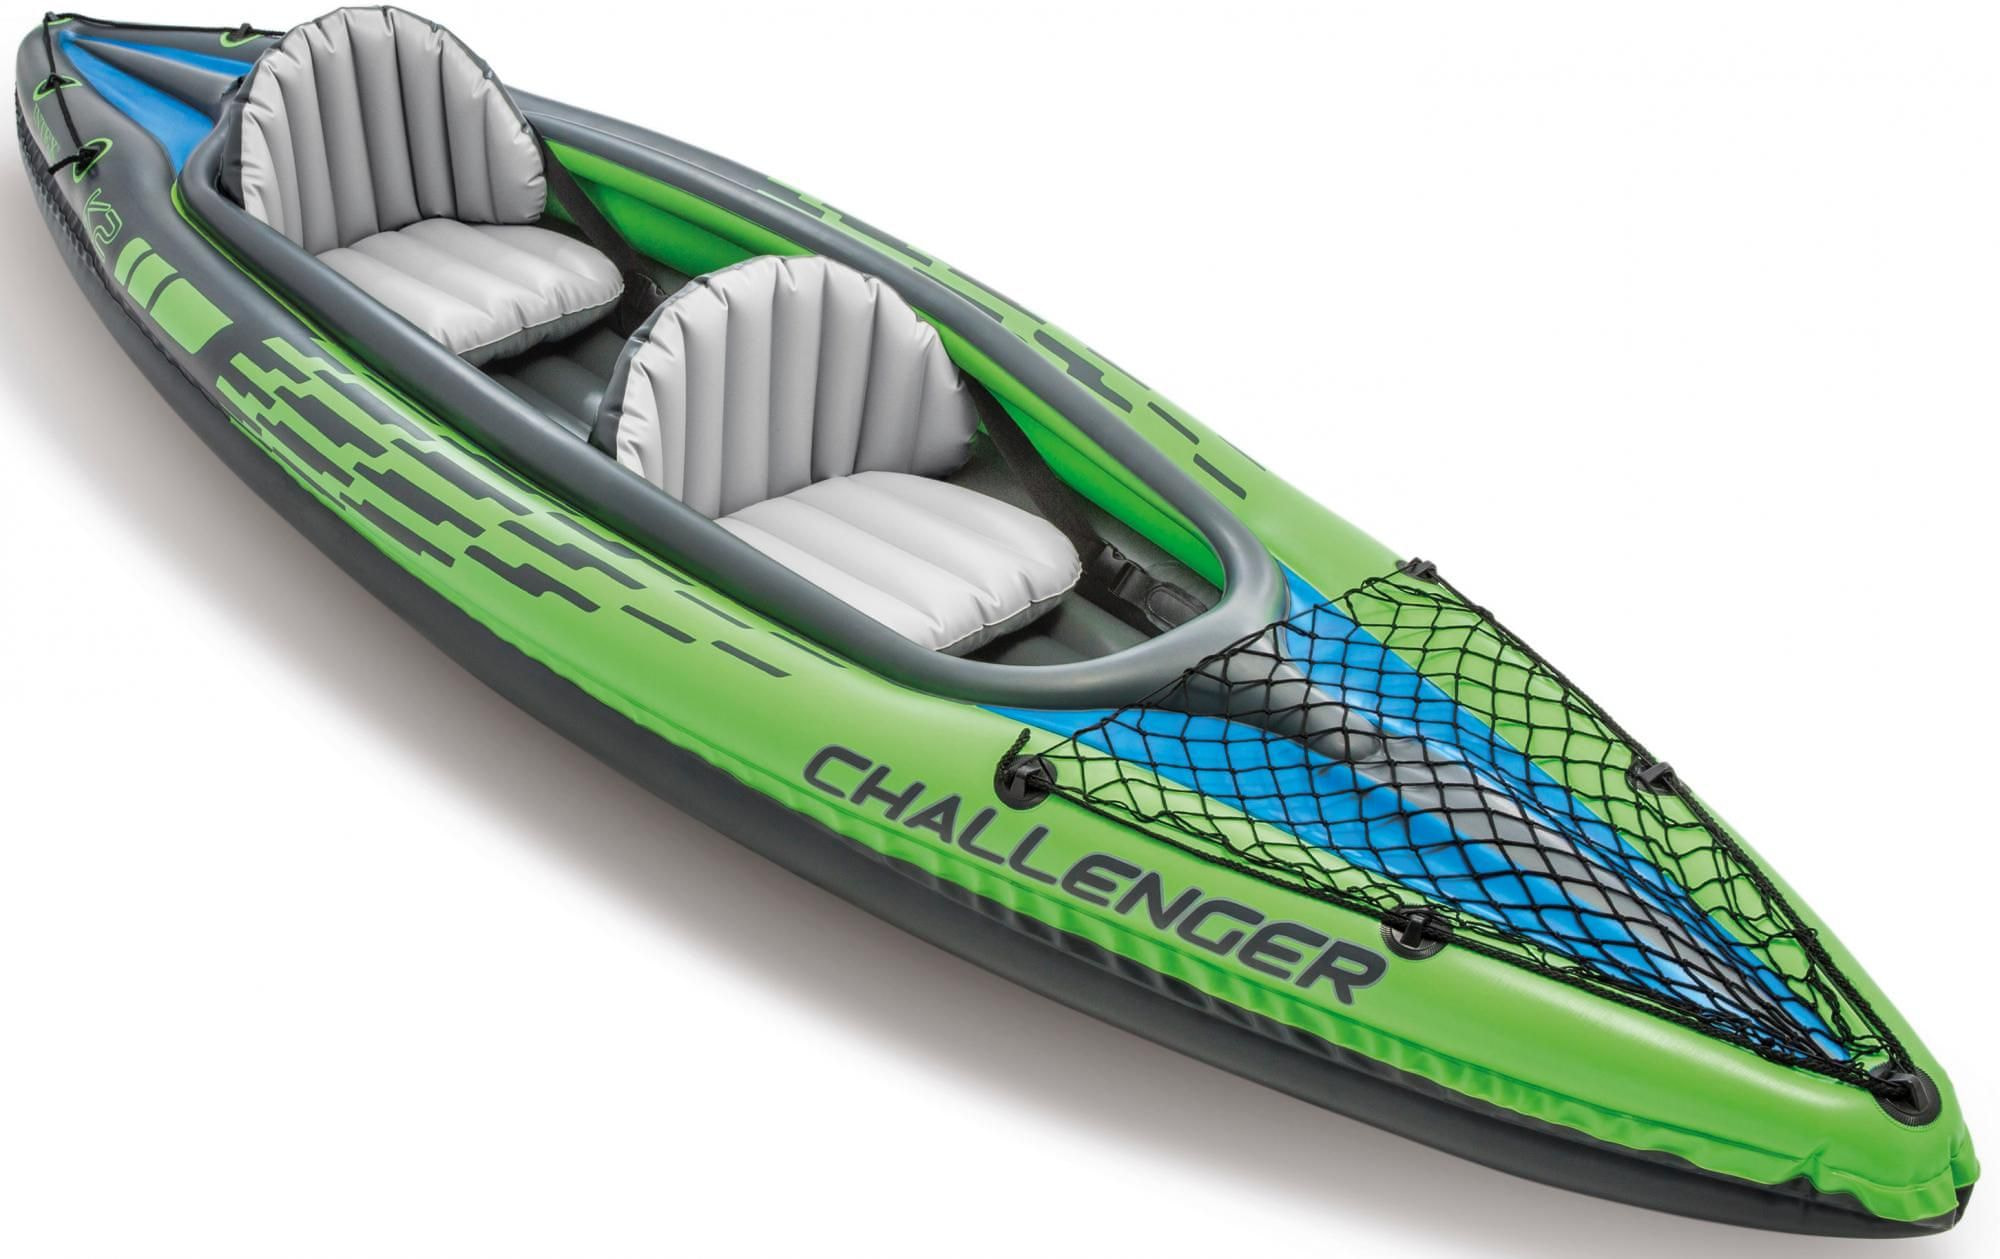 Байдарка двухместная купить. Надувная байдарка Intex 68306 Challenger k2 Kayak. Байдарка Intex Challenger k2. Надувная байдарка Intex Challenger k2. Лодка Intex Challenger 2.